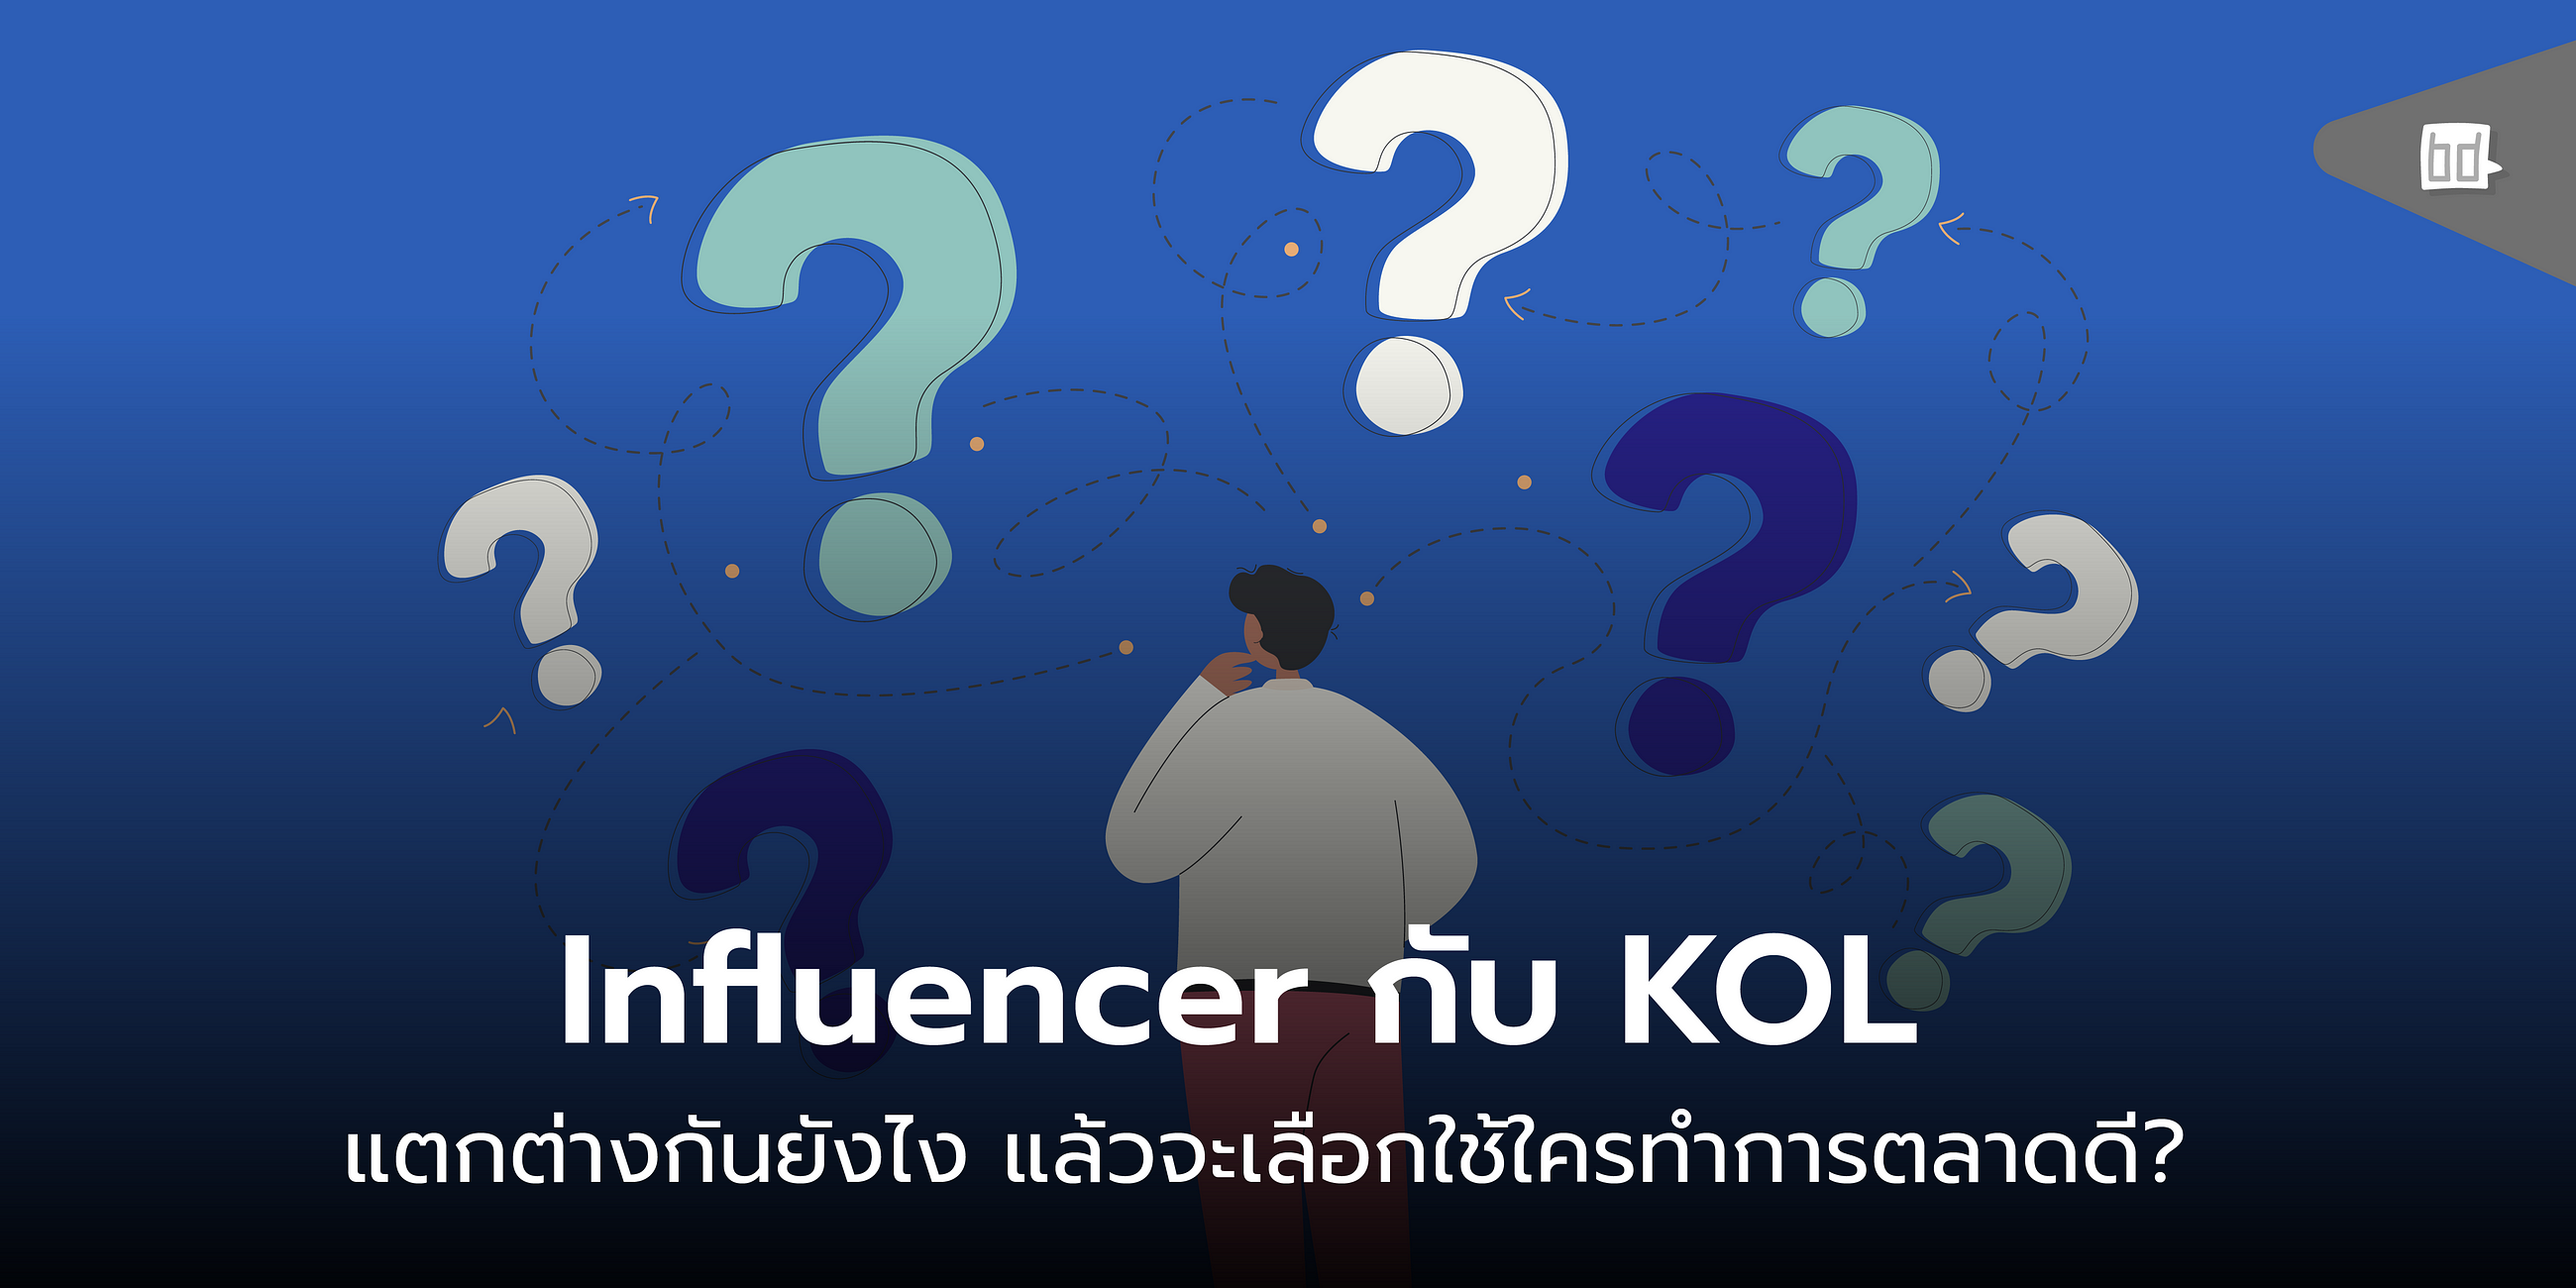 Influencer vs KOL นั้นมีความแตกต่างยังไง แล้วจะเลือกใช้ใครดี?